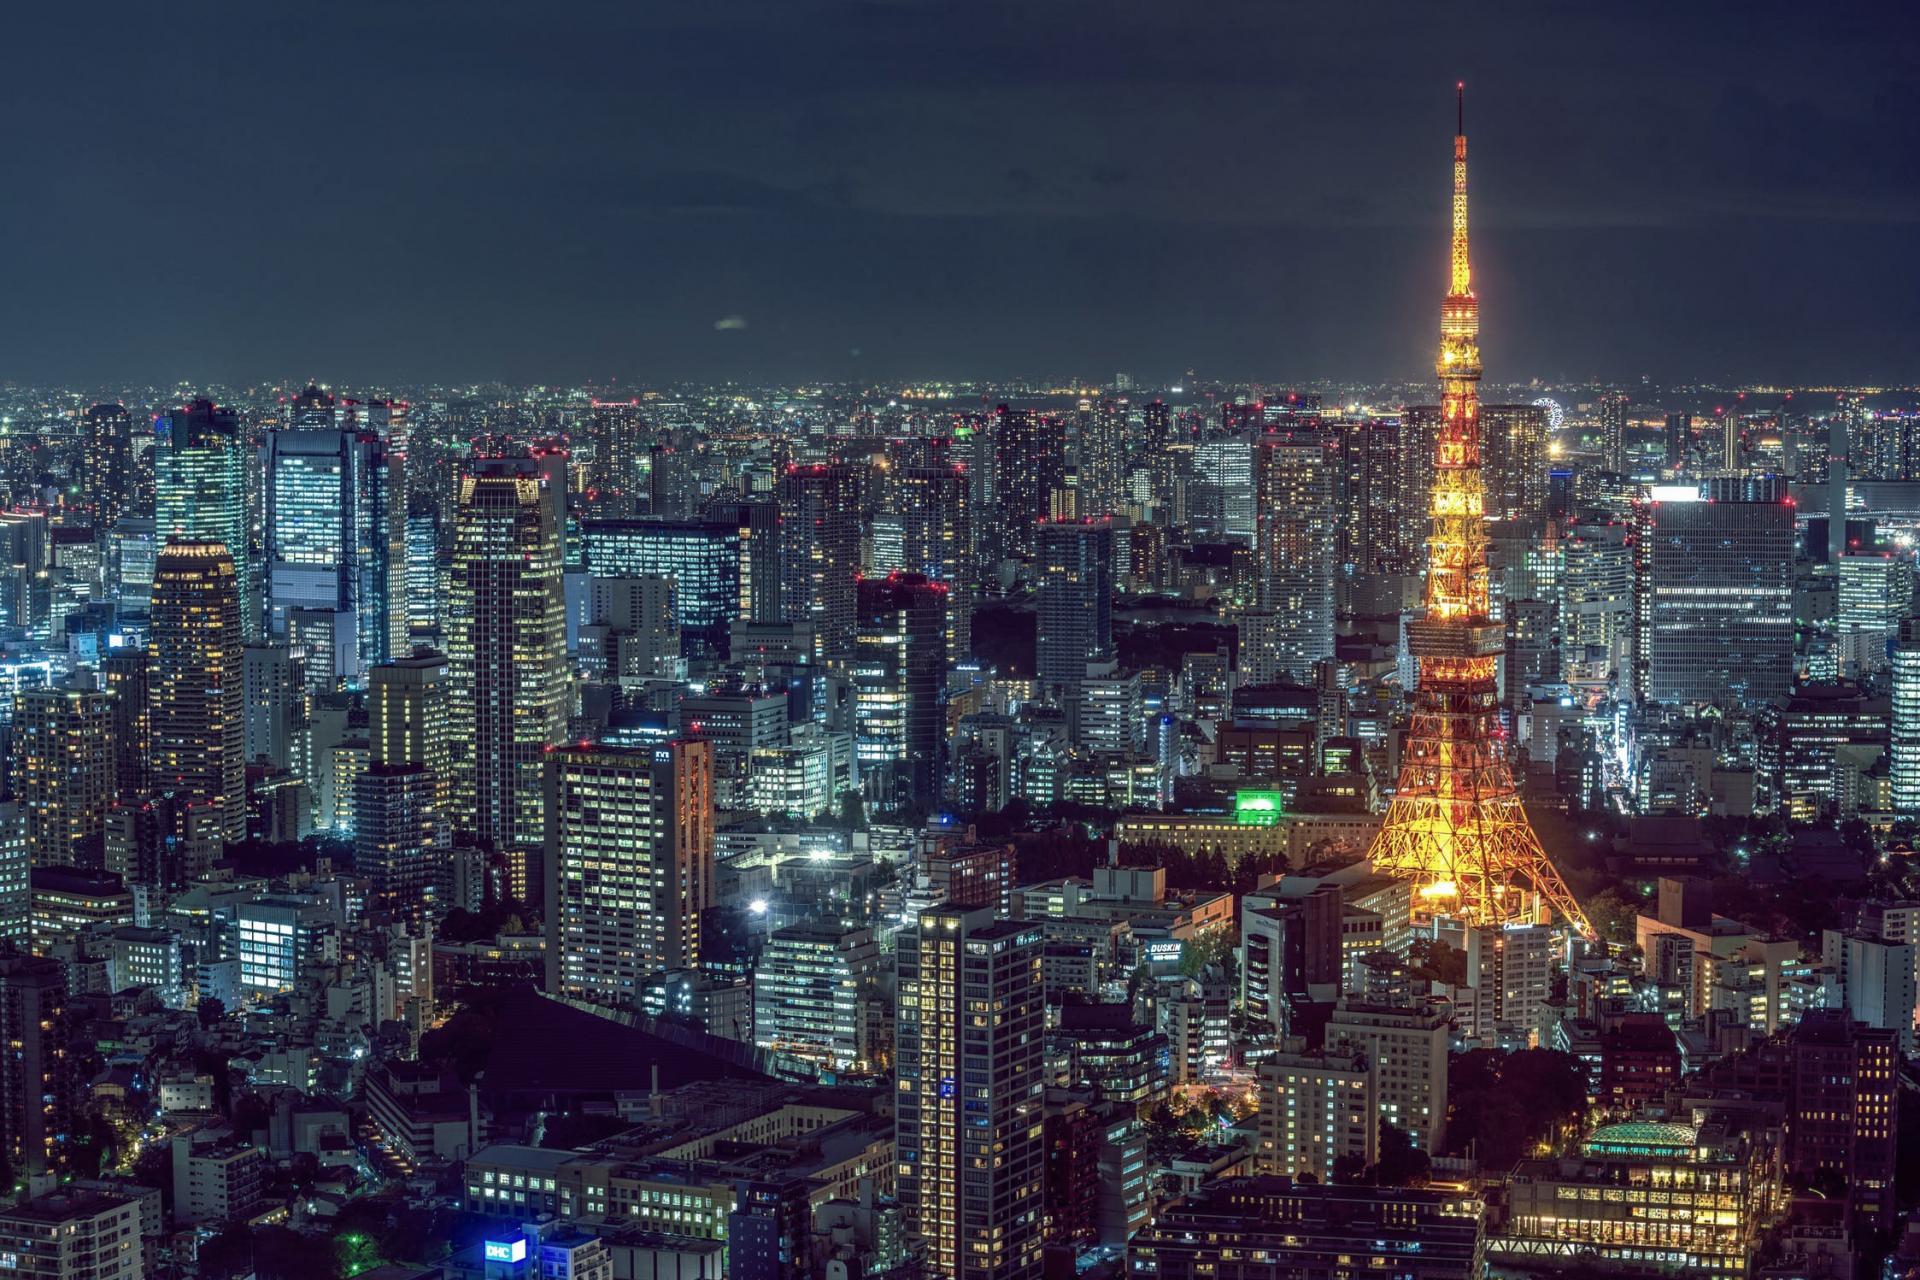 AI Japan cities